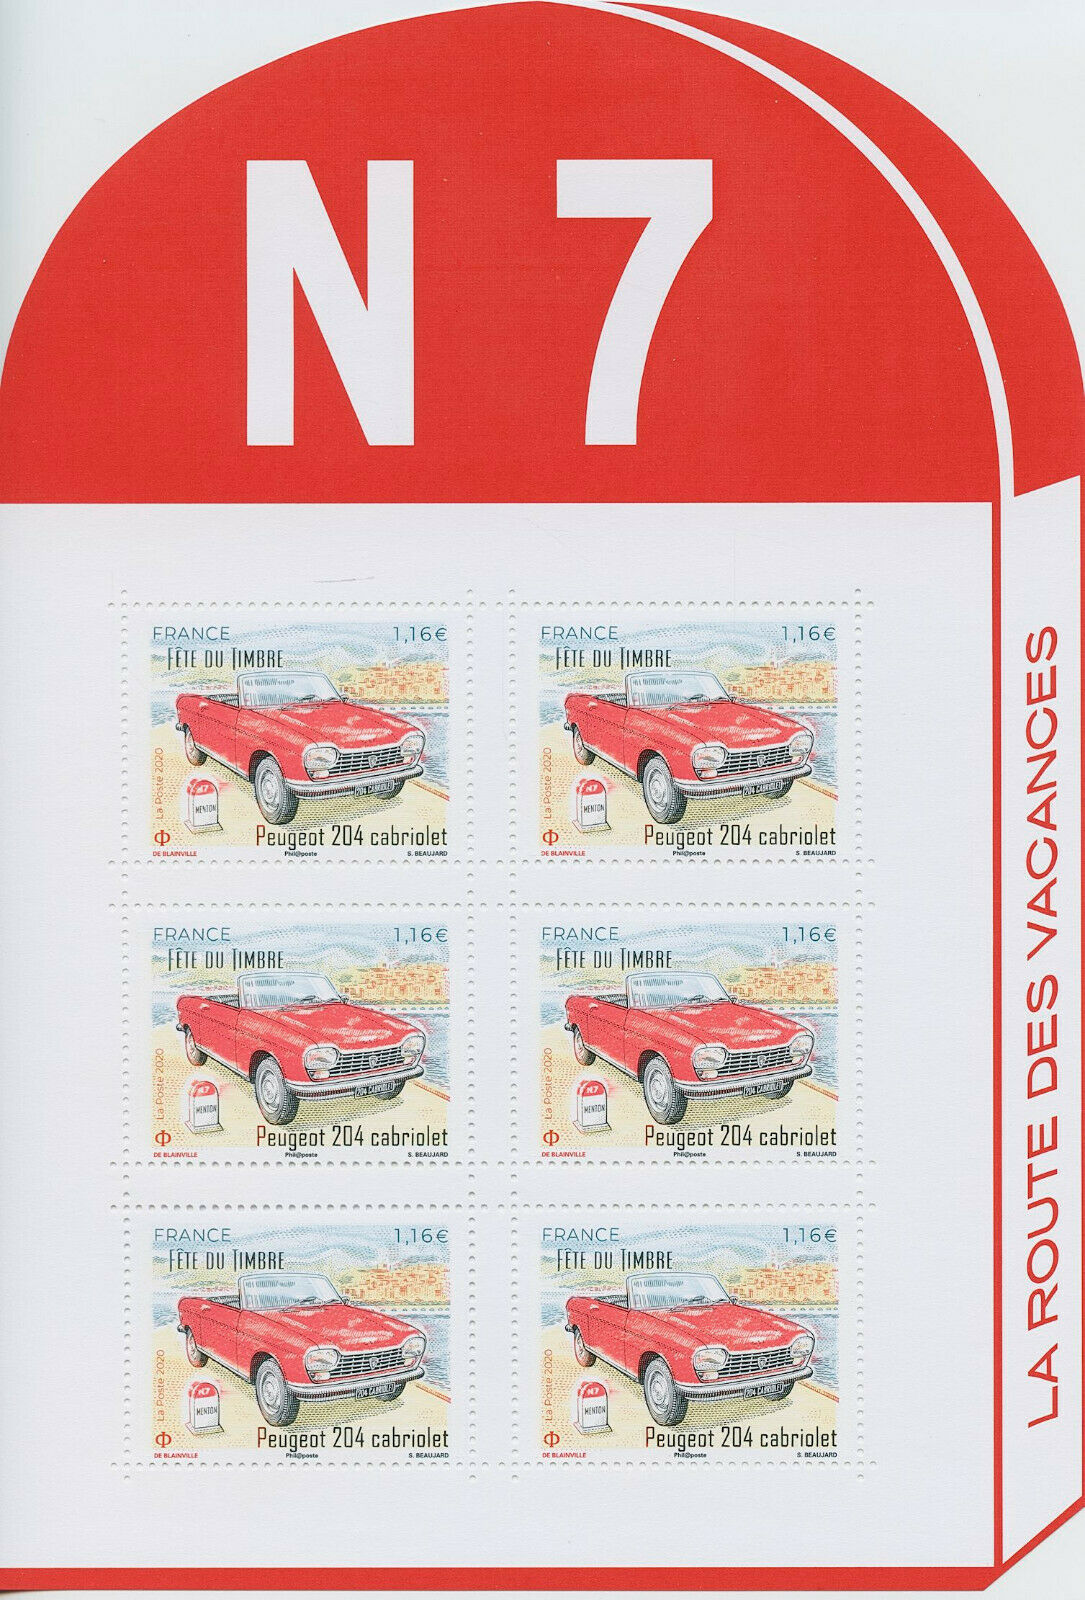 France 2020 MNH Cars Stamps Stamp Day Peugeot 204 Cabriolet 6v M/S